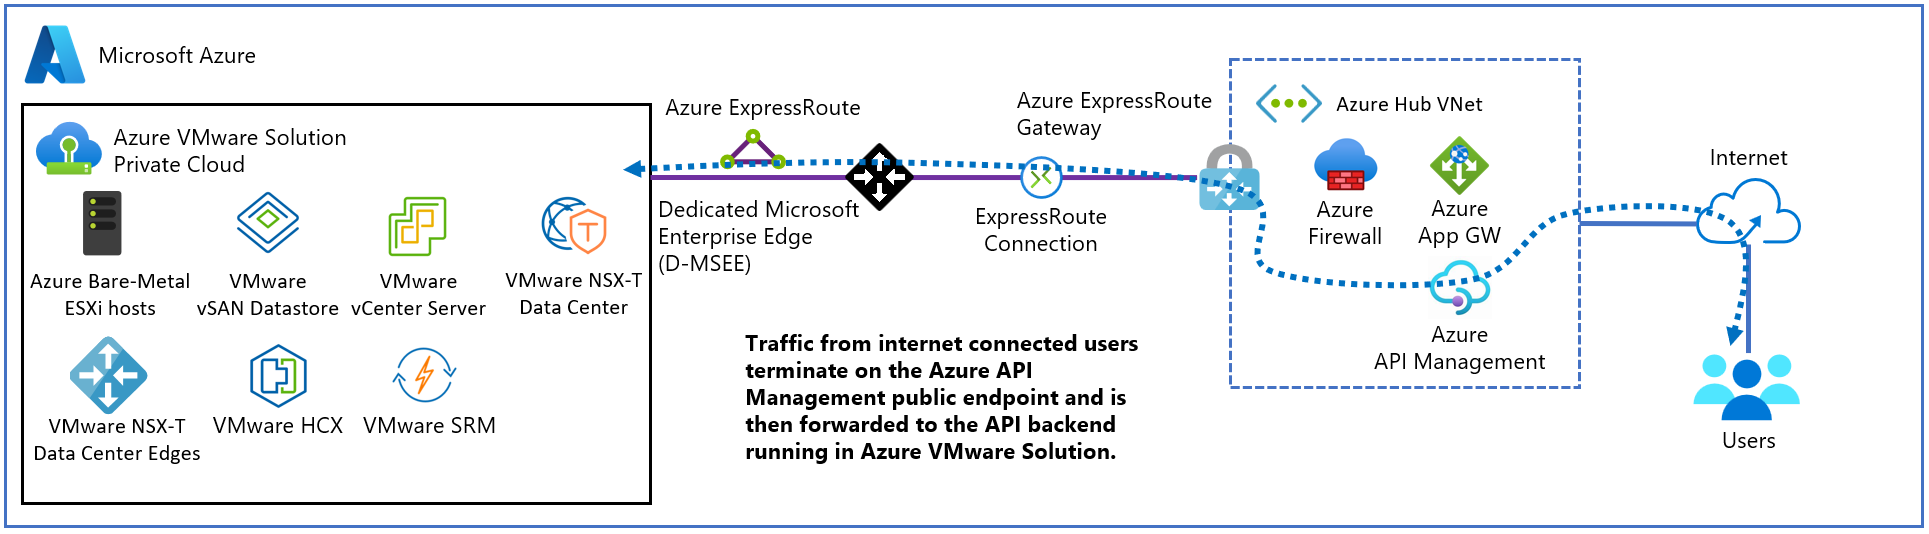 Azure VMware Çözümü için dış API Management dağıtımlarını gösteren diyagram